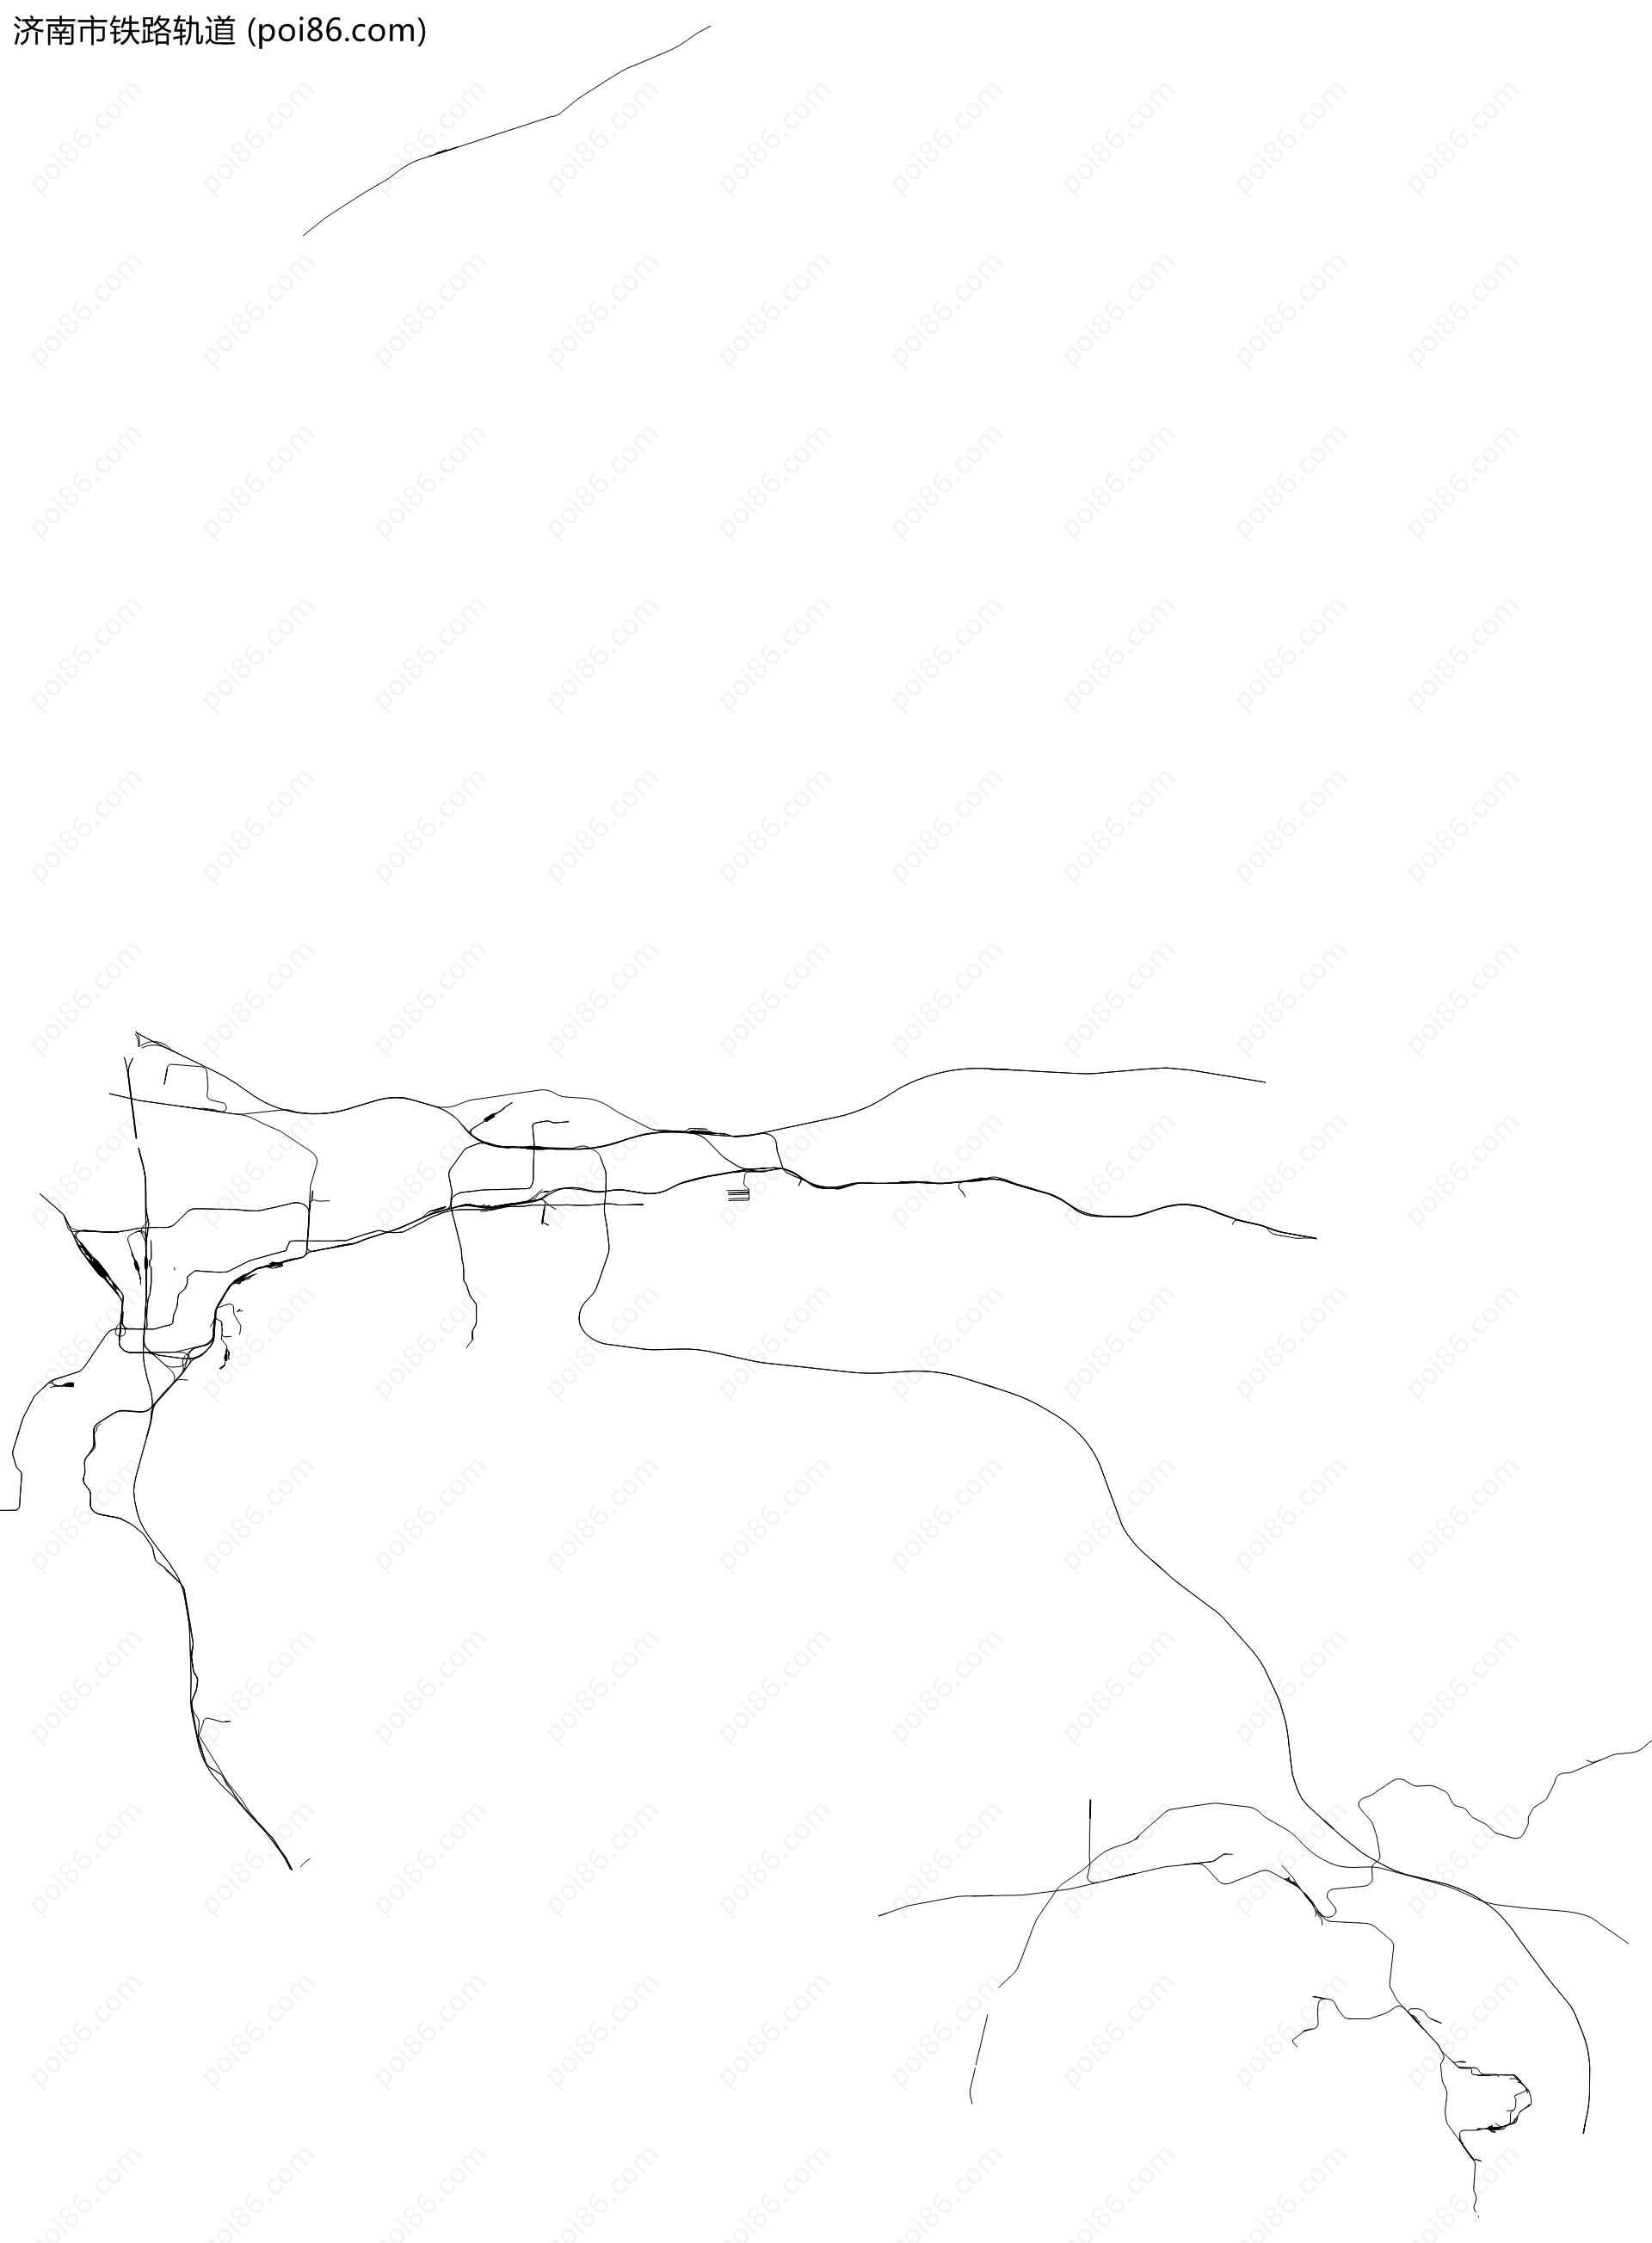 济南市铁路轨道地图